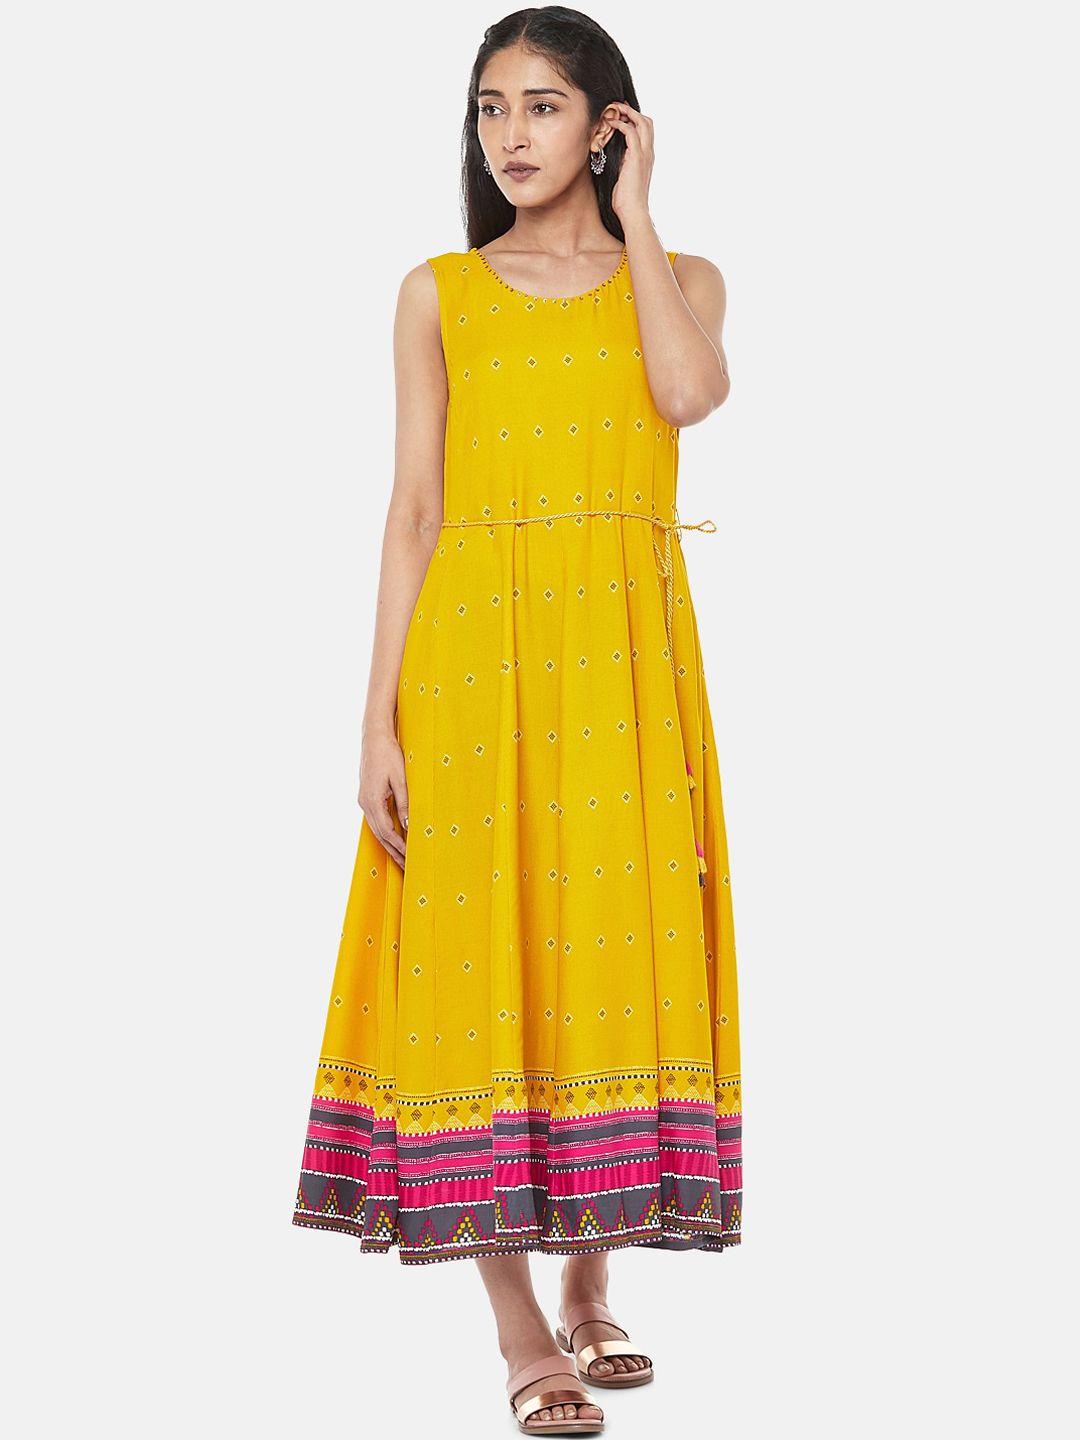 akkriti-by-pantaloons-yellow-midi-dress